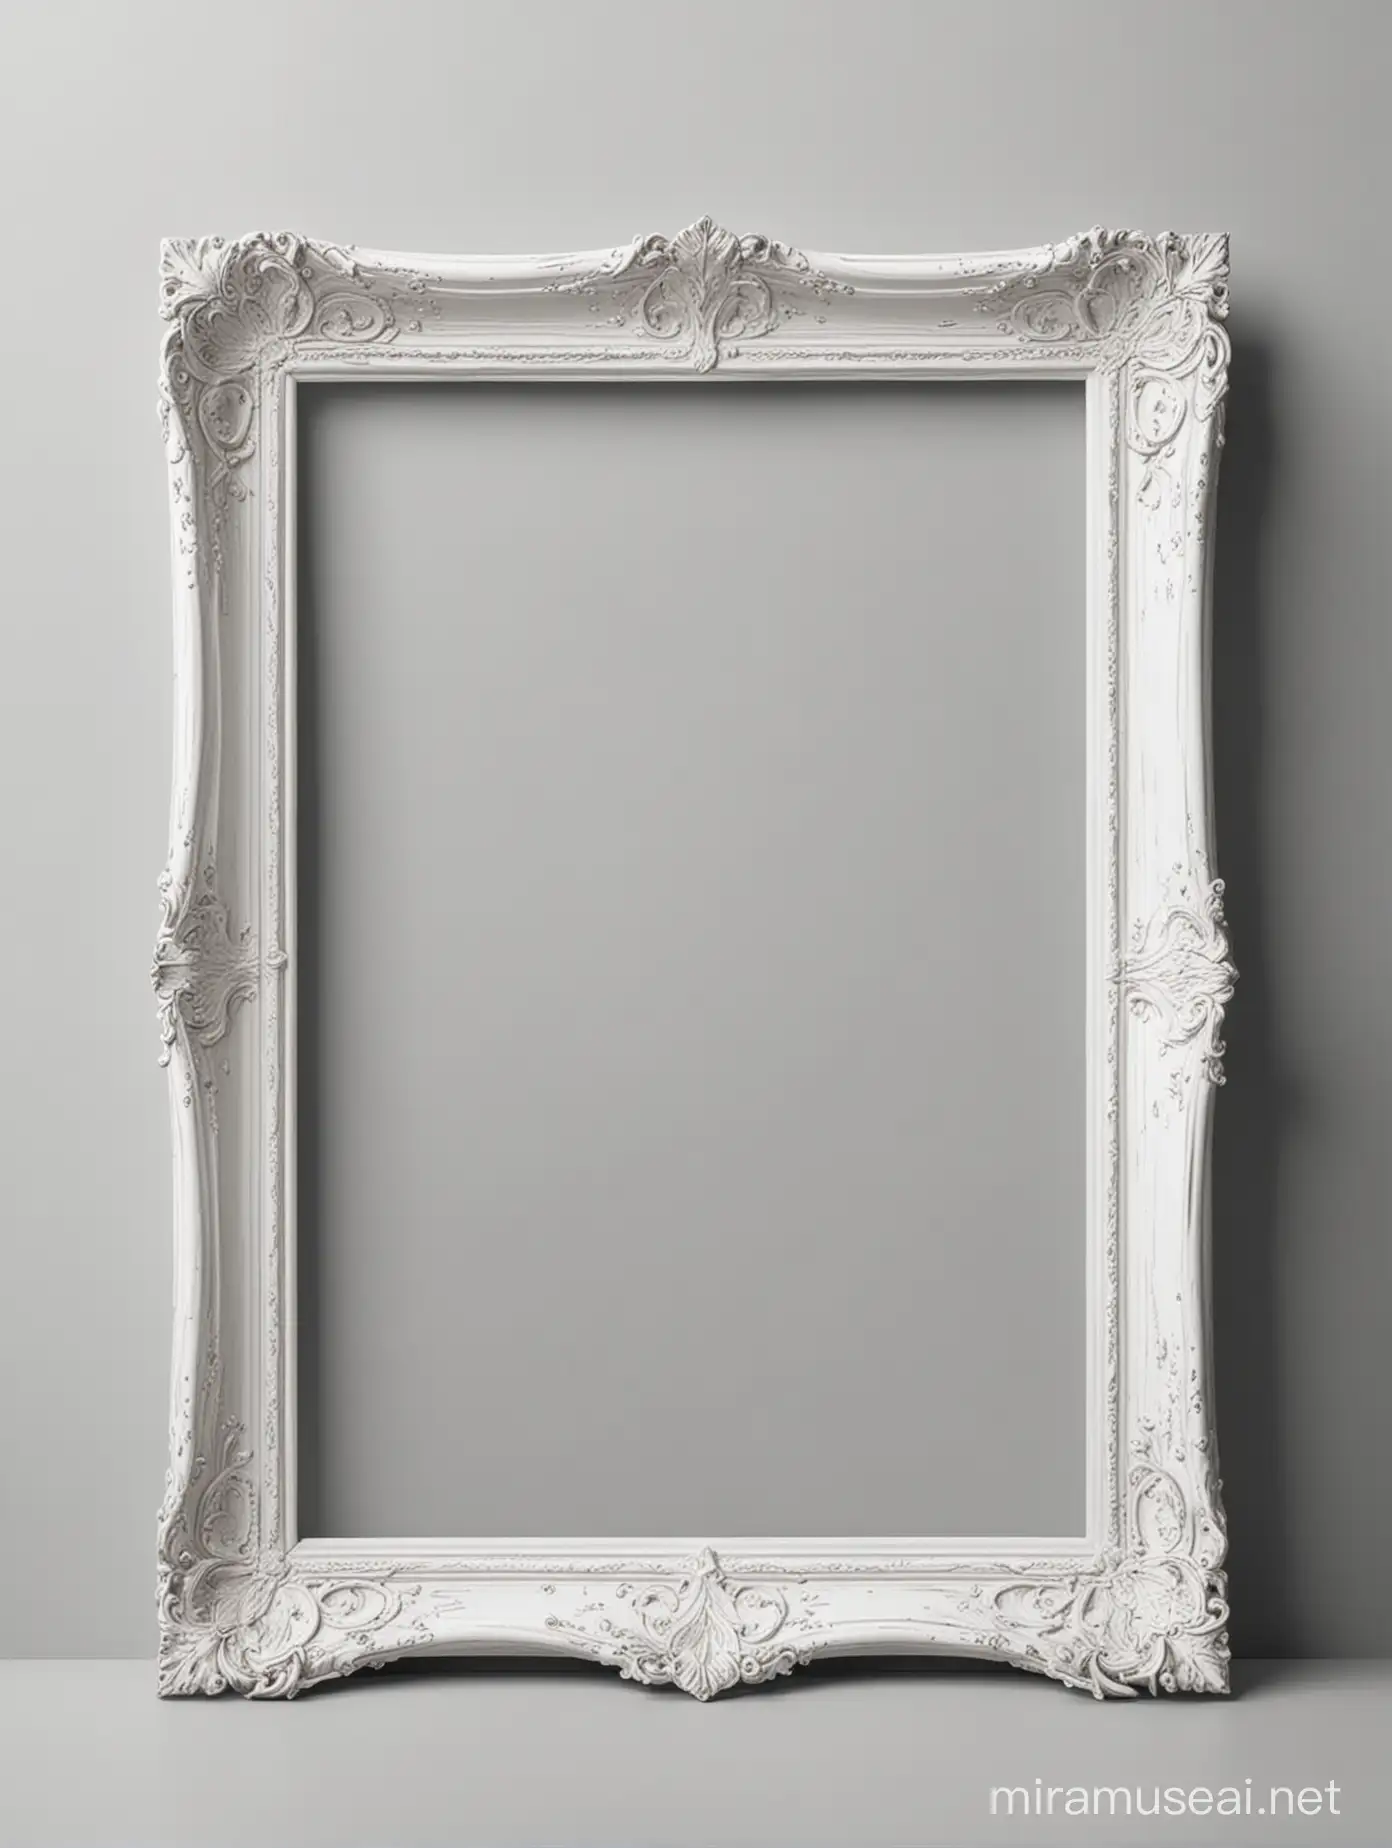 Modern Empty Elegant Frame on White Background